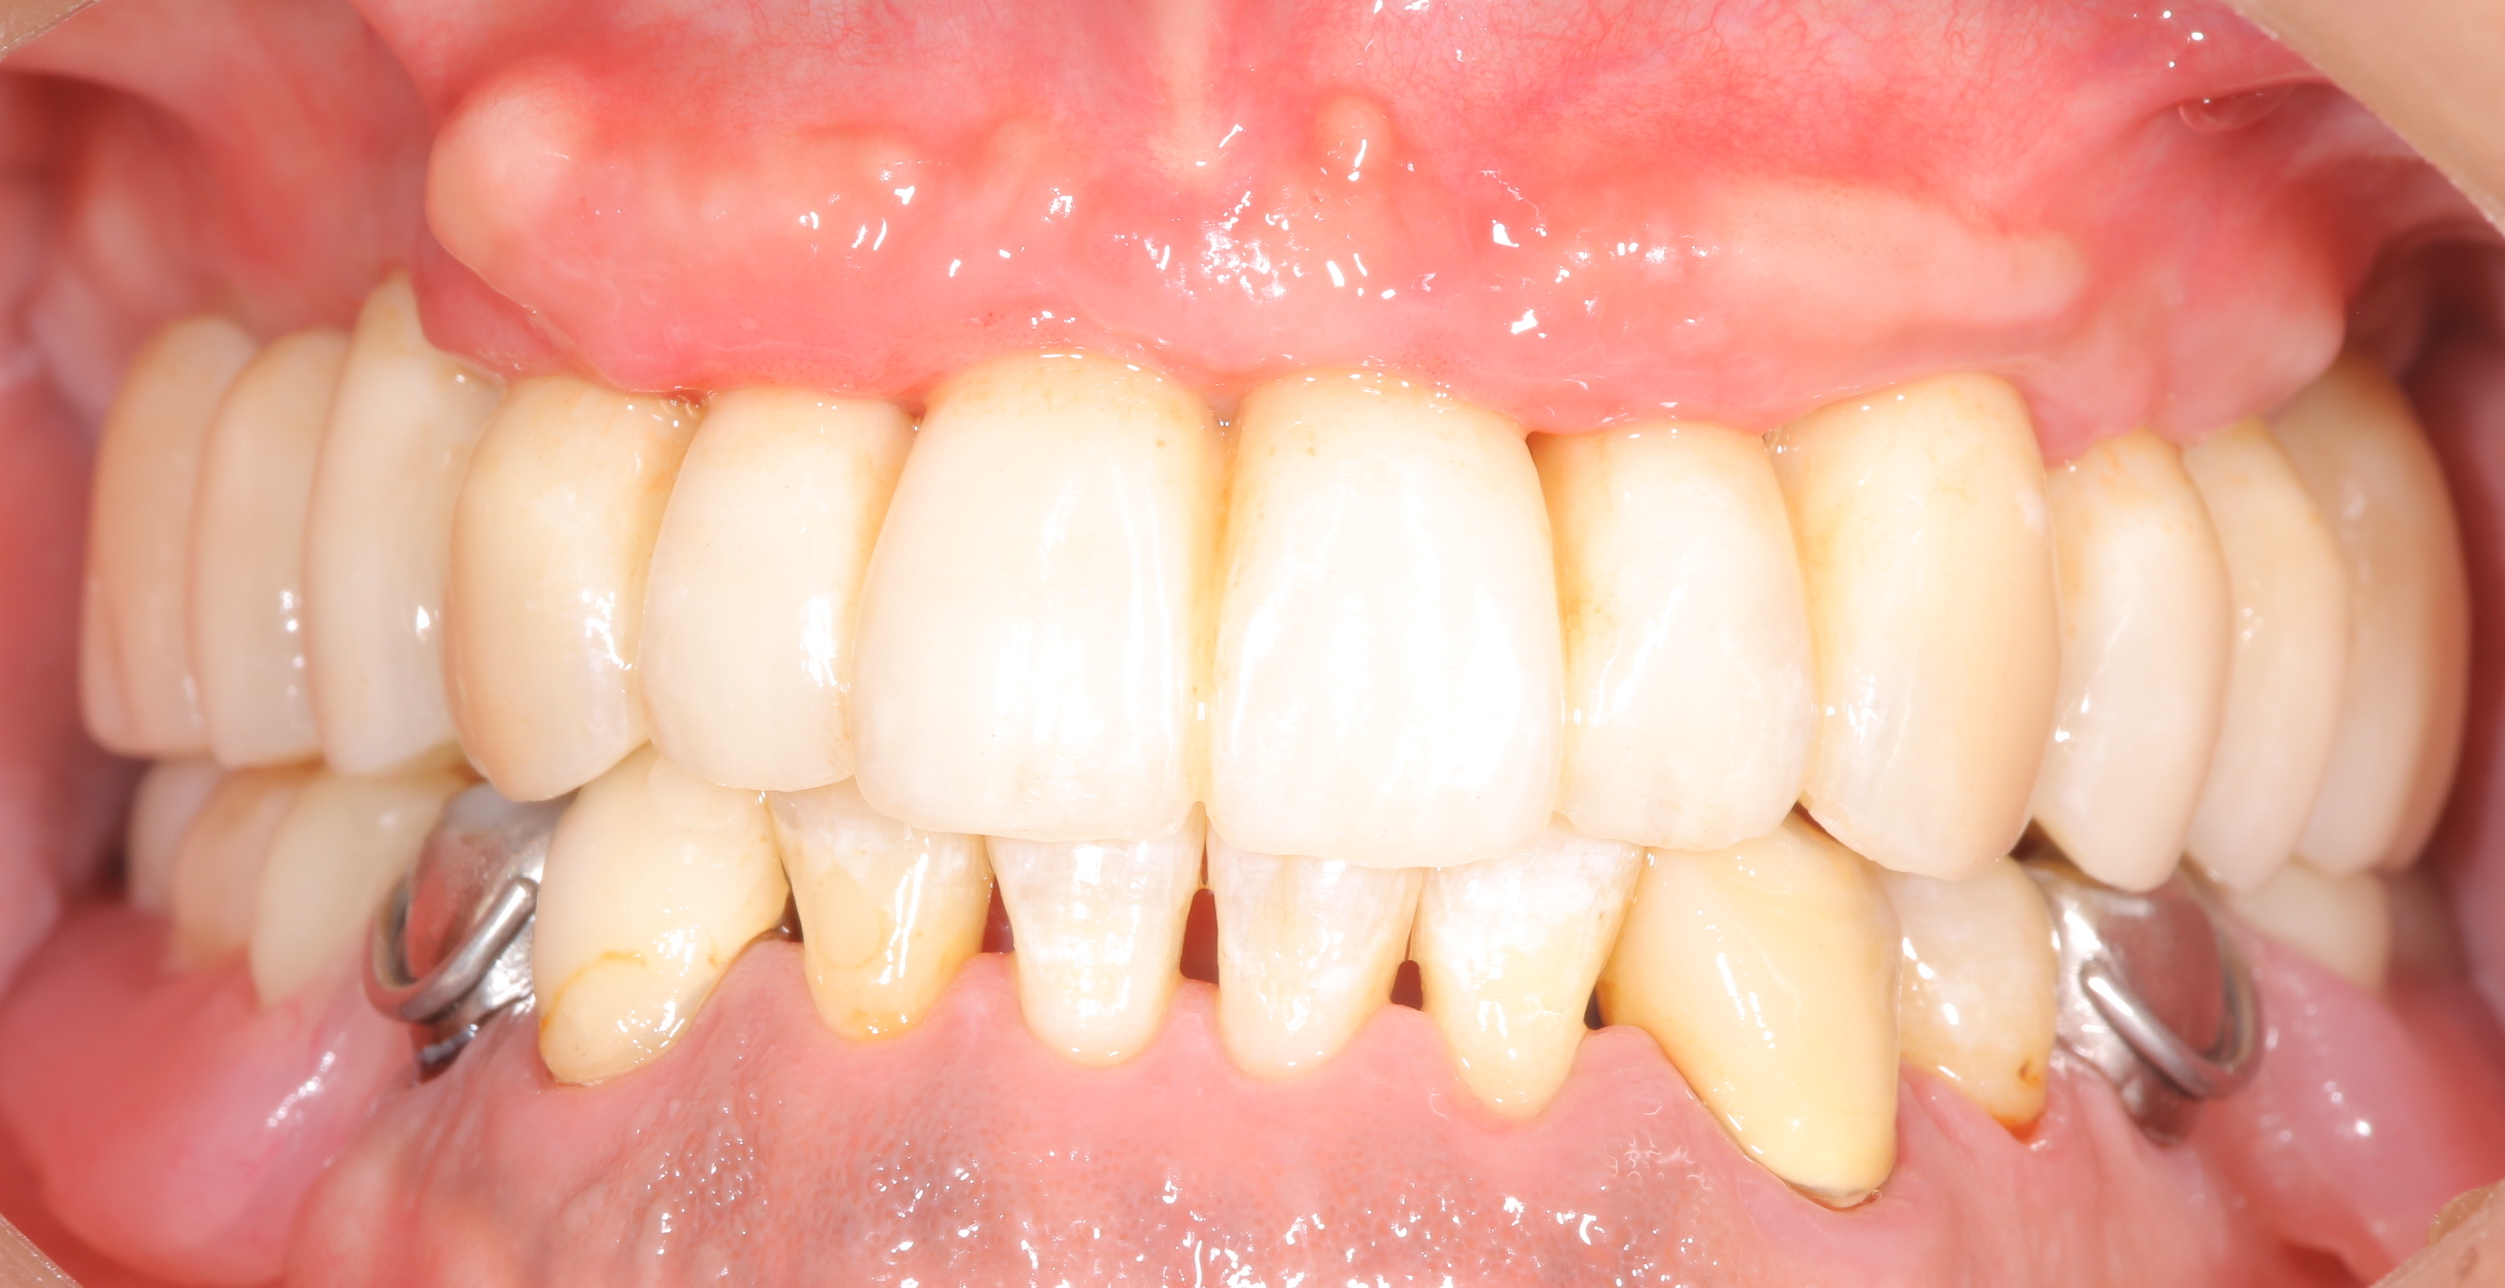 インプラントを埋入することで総義歯から固定式ブリッジヘ